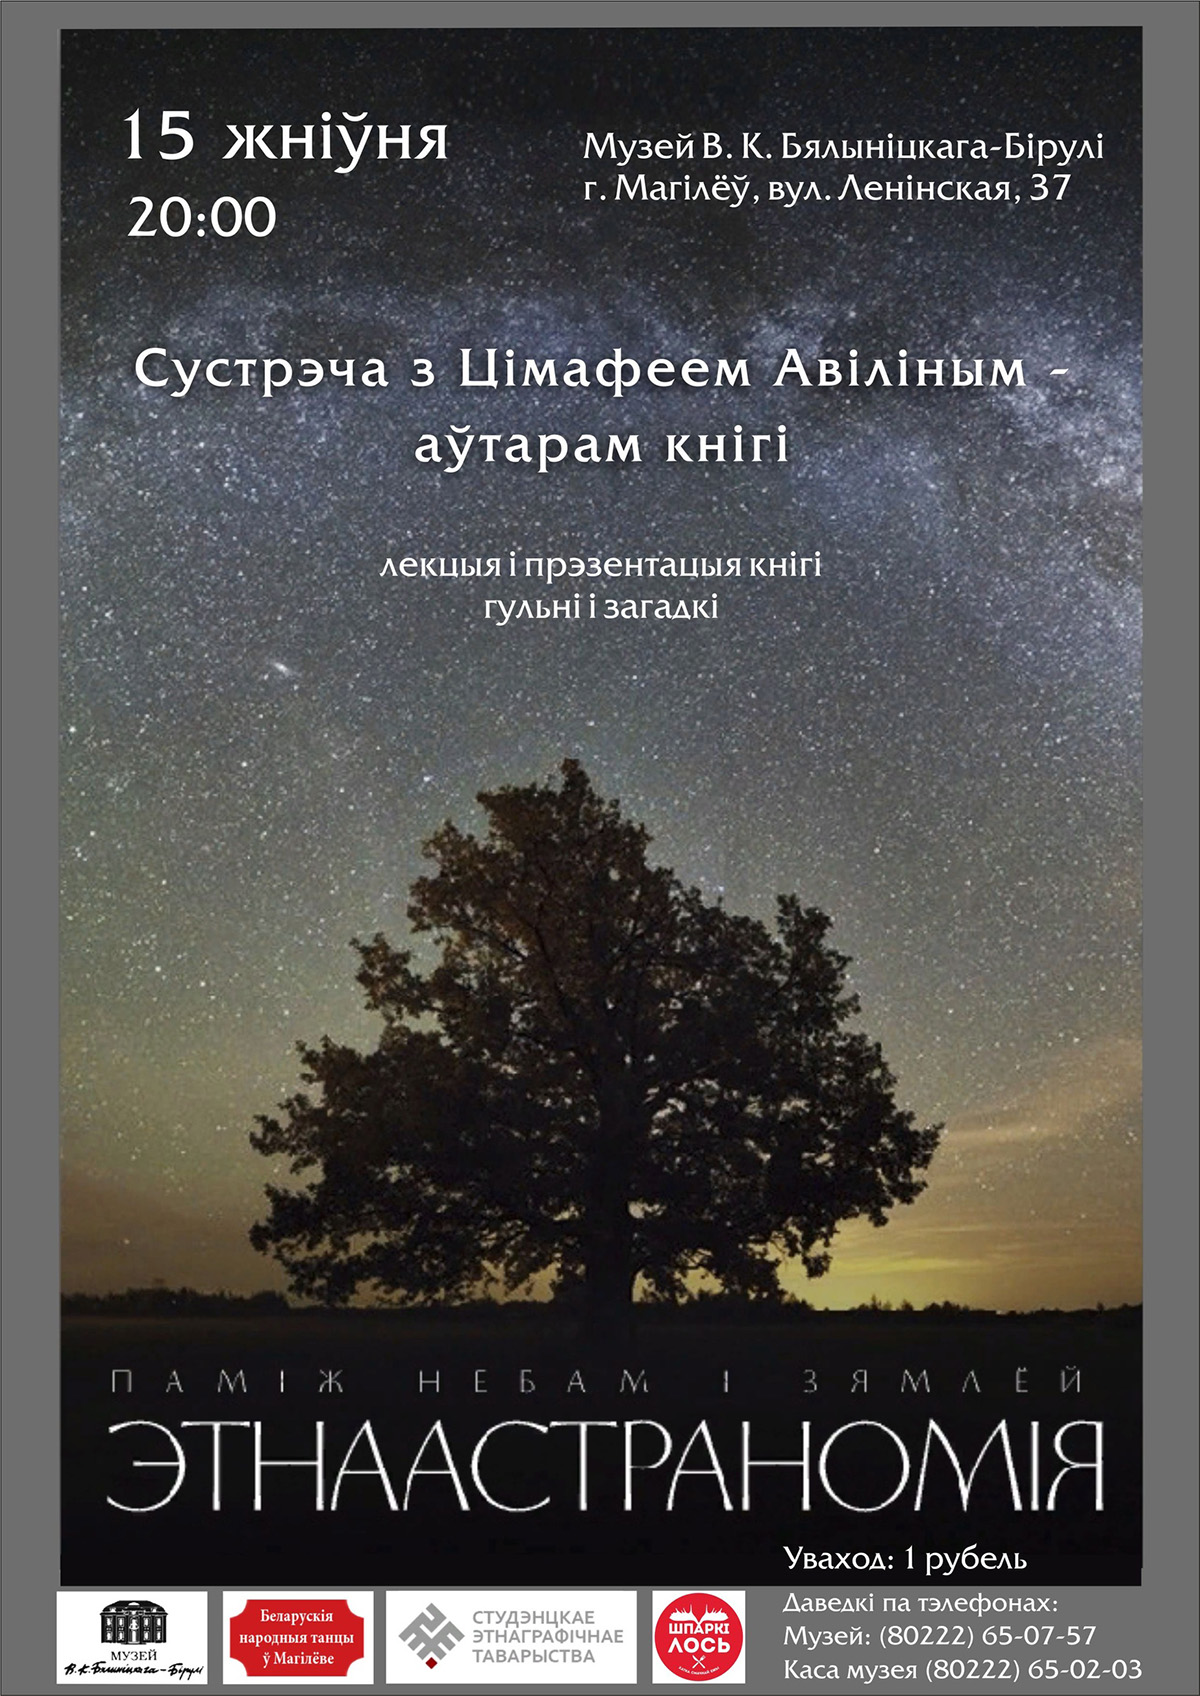 Встреча с автором книги «Между небом и землей: этноастрономия» Тимофеем Авилиным состоится в Могилеве 15 августа